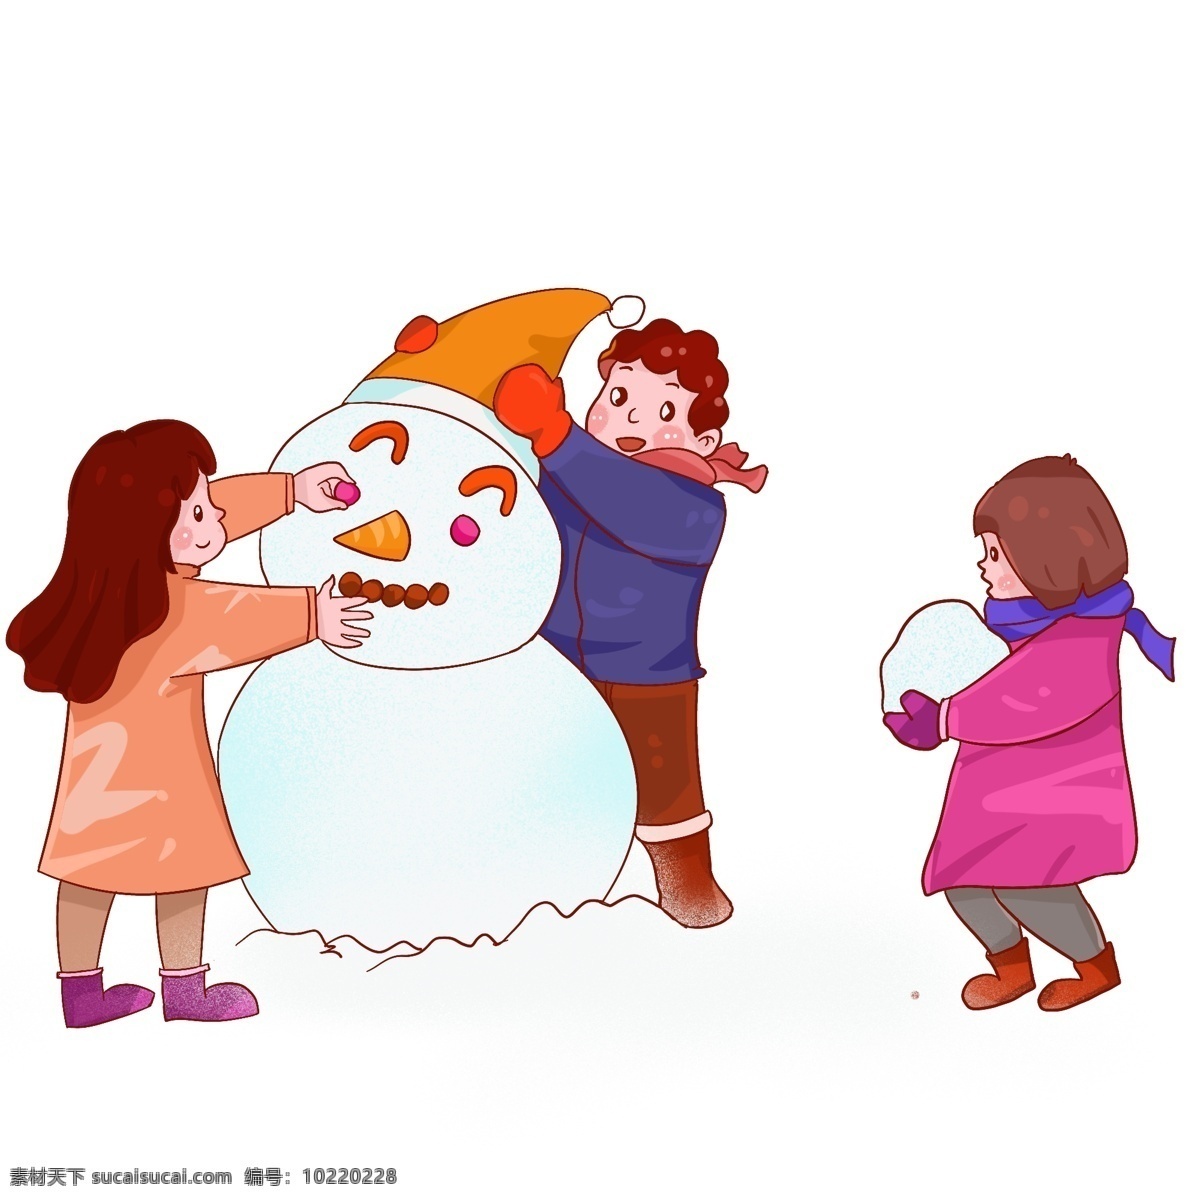 新年 过年 堆 雪人 孩子 中国风 喜庆 卡通 人物 插画 堆雪人 传统节日 吉祥 如意 庆祝 高兴 快乐 手绘